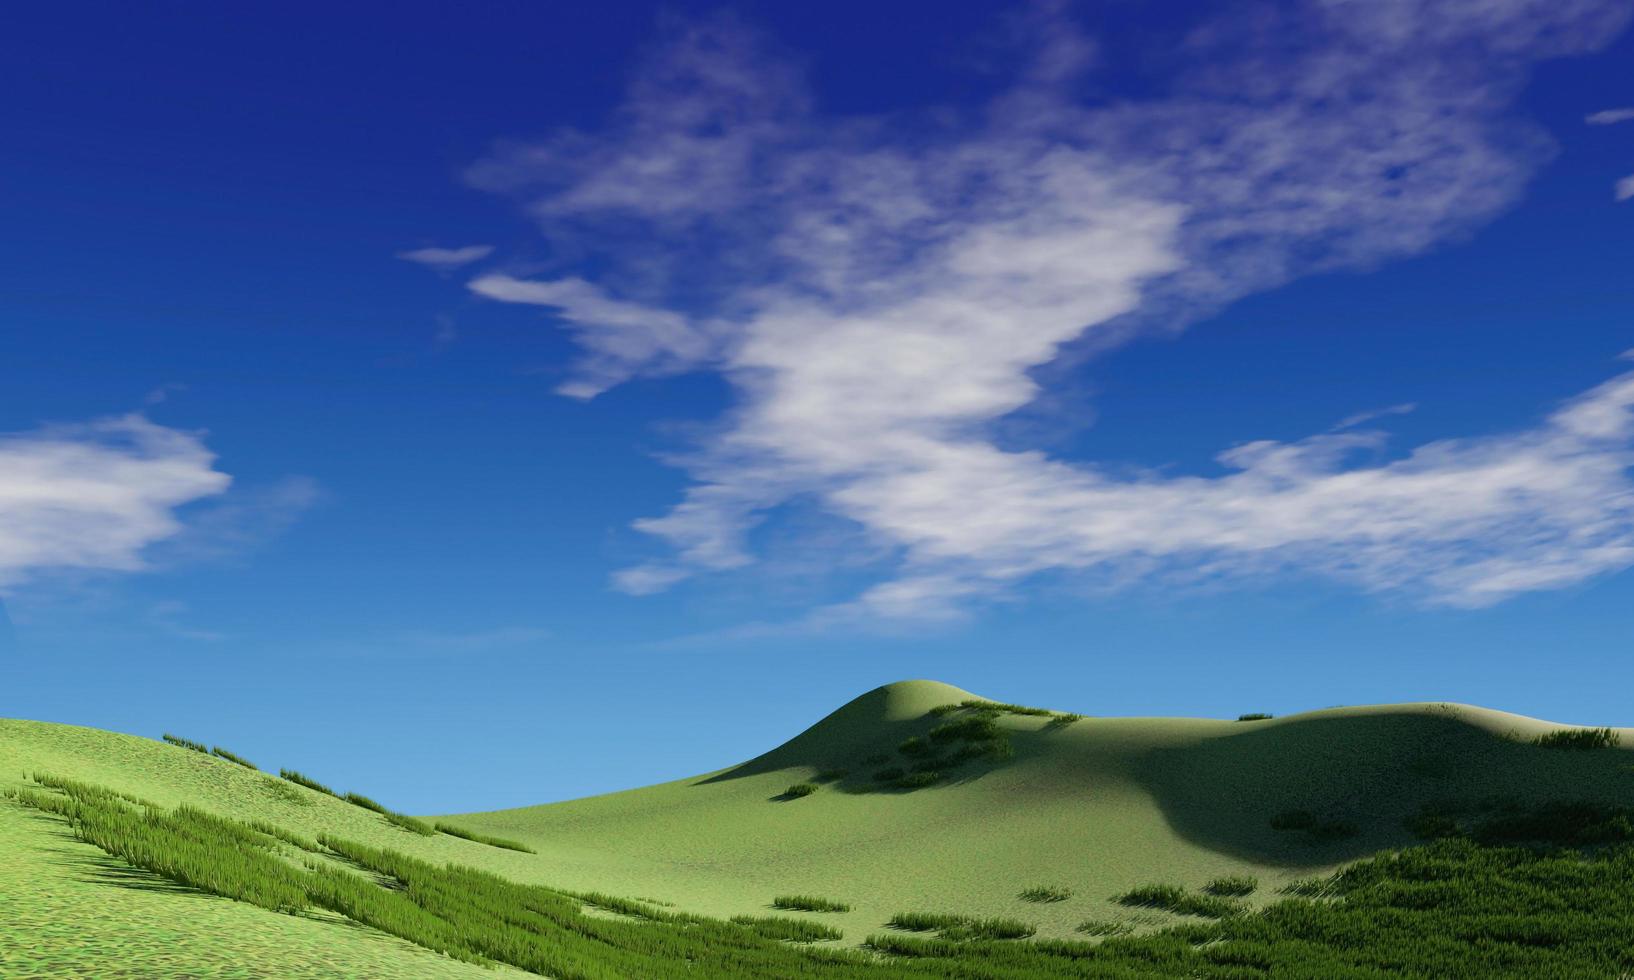 cielo azul y hermosa nube con árbol de pradera. fondo de paisaje llano para el cartel de verano. la mejor vista para vacaciones. imagen de campo de hierba verde y cielo azul con nubes blancas foto